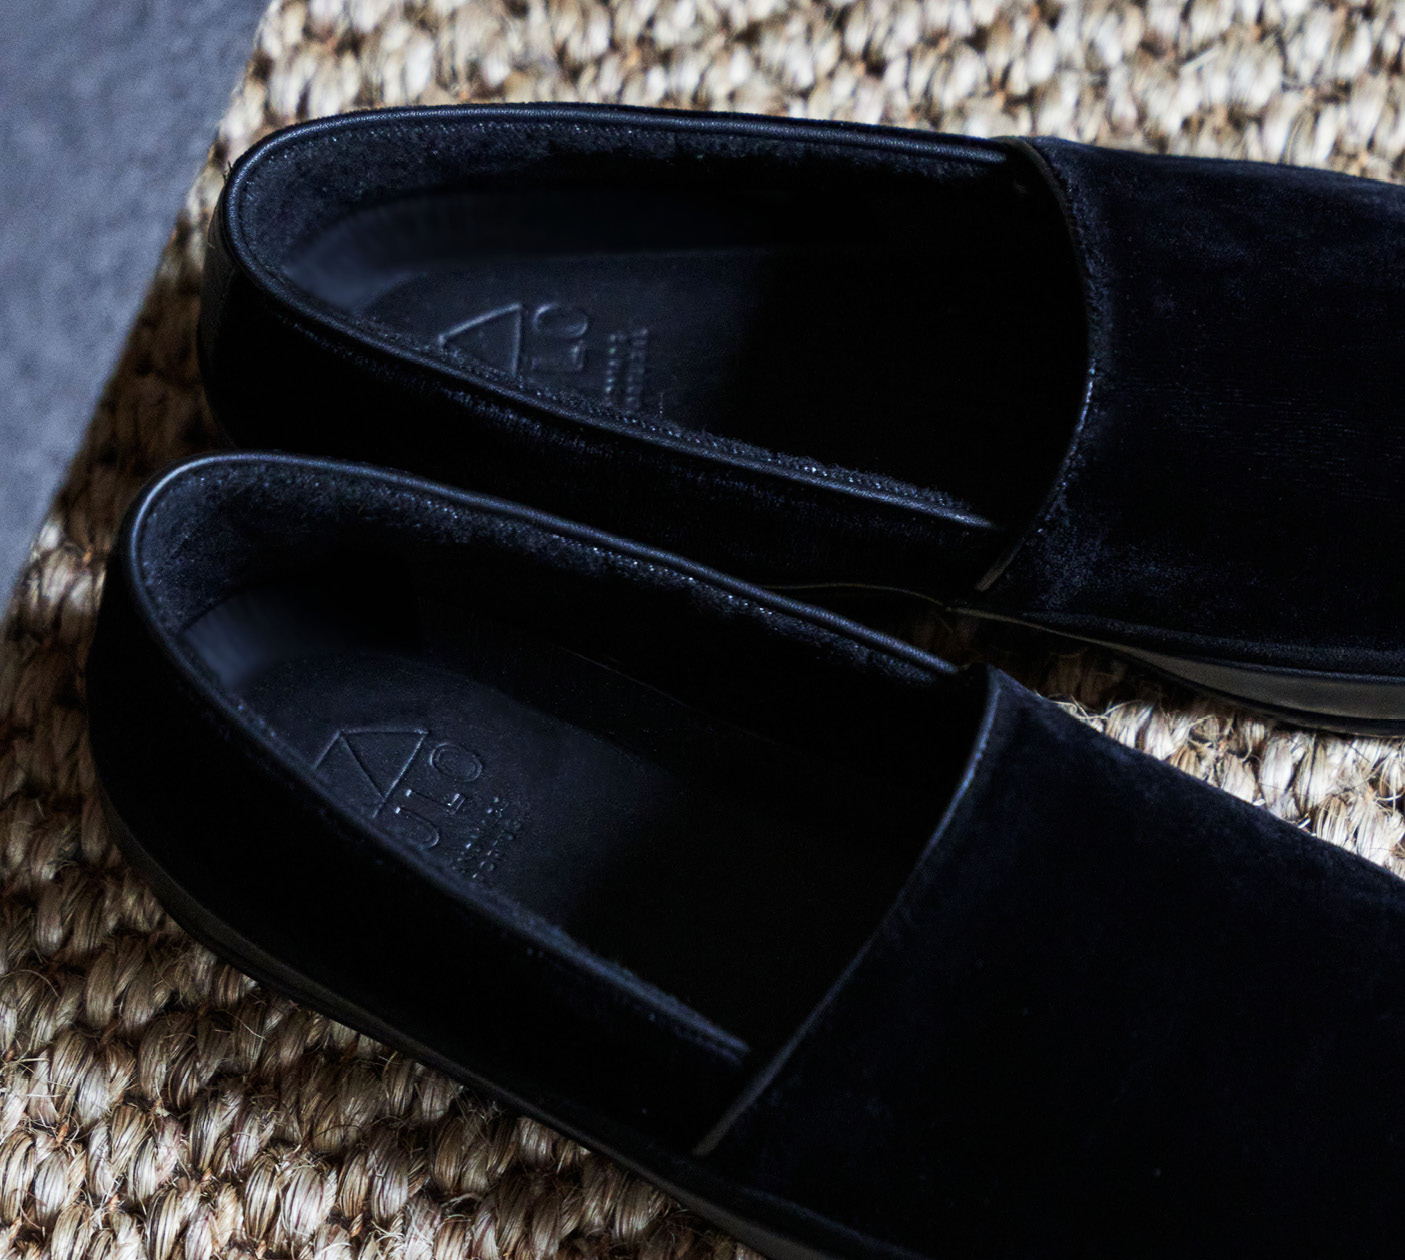 Luxury Slippers for Men - Black Velvet Evening Slippers